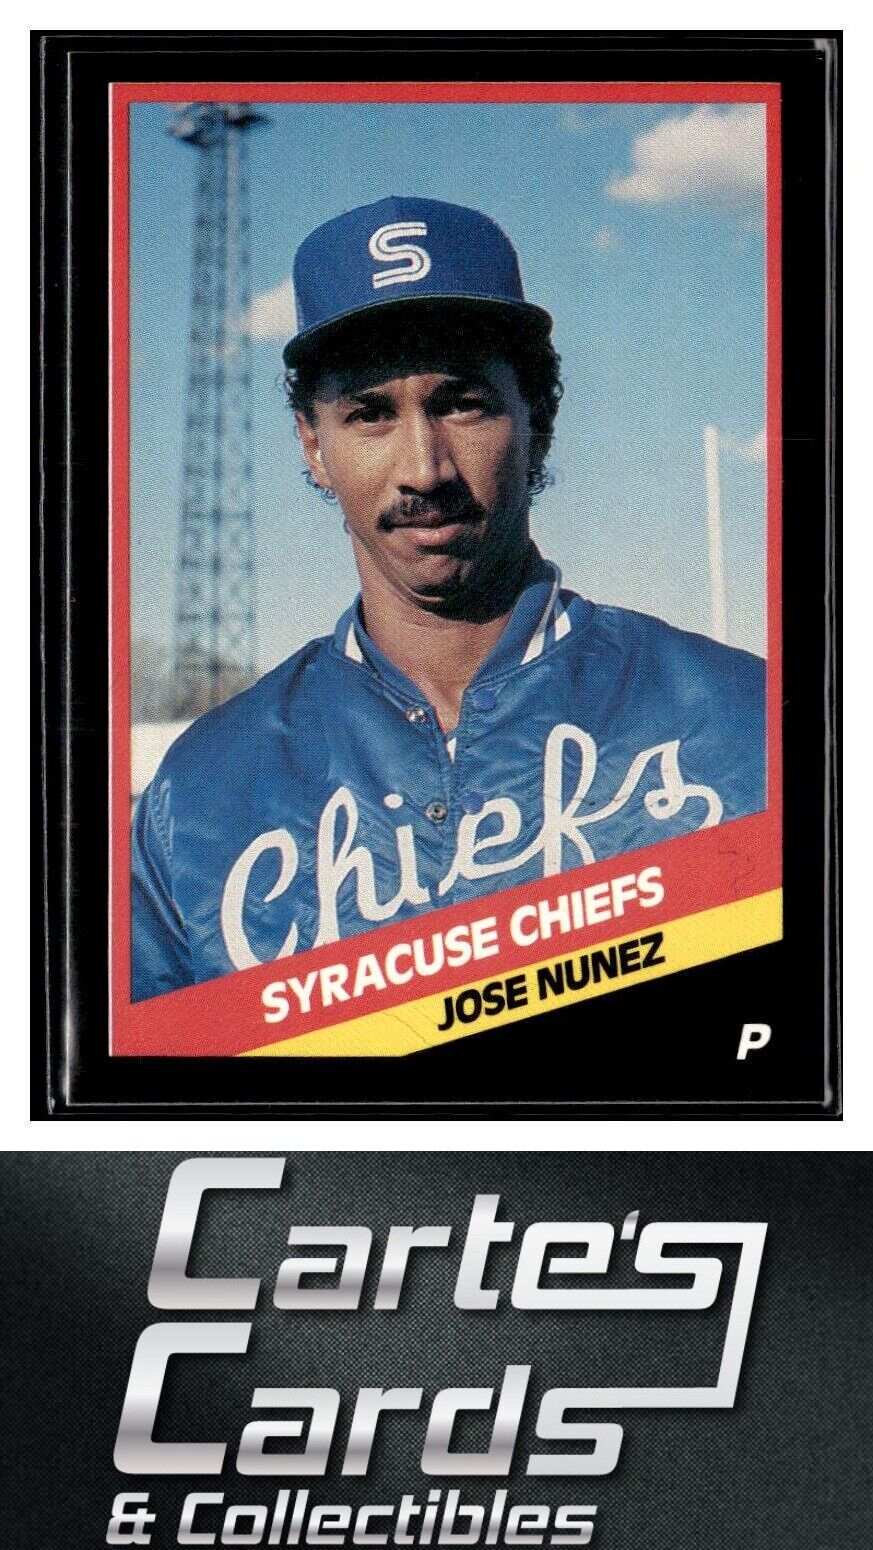 Jose Nunez 1988 CMC Syracuse Chiefs #4  Toronto Blue Jays